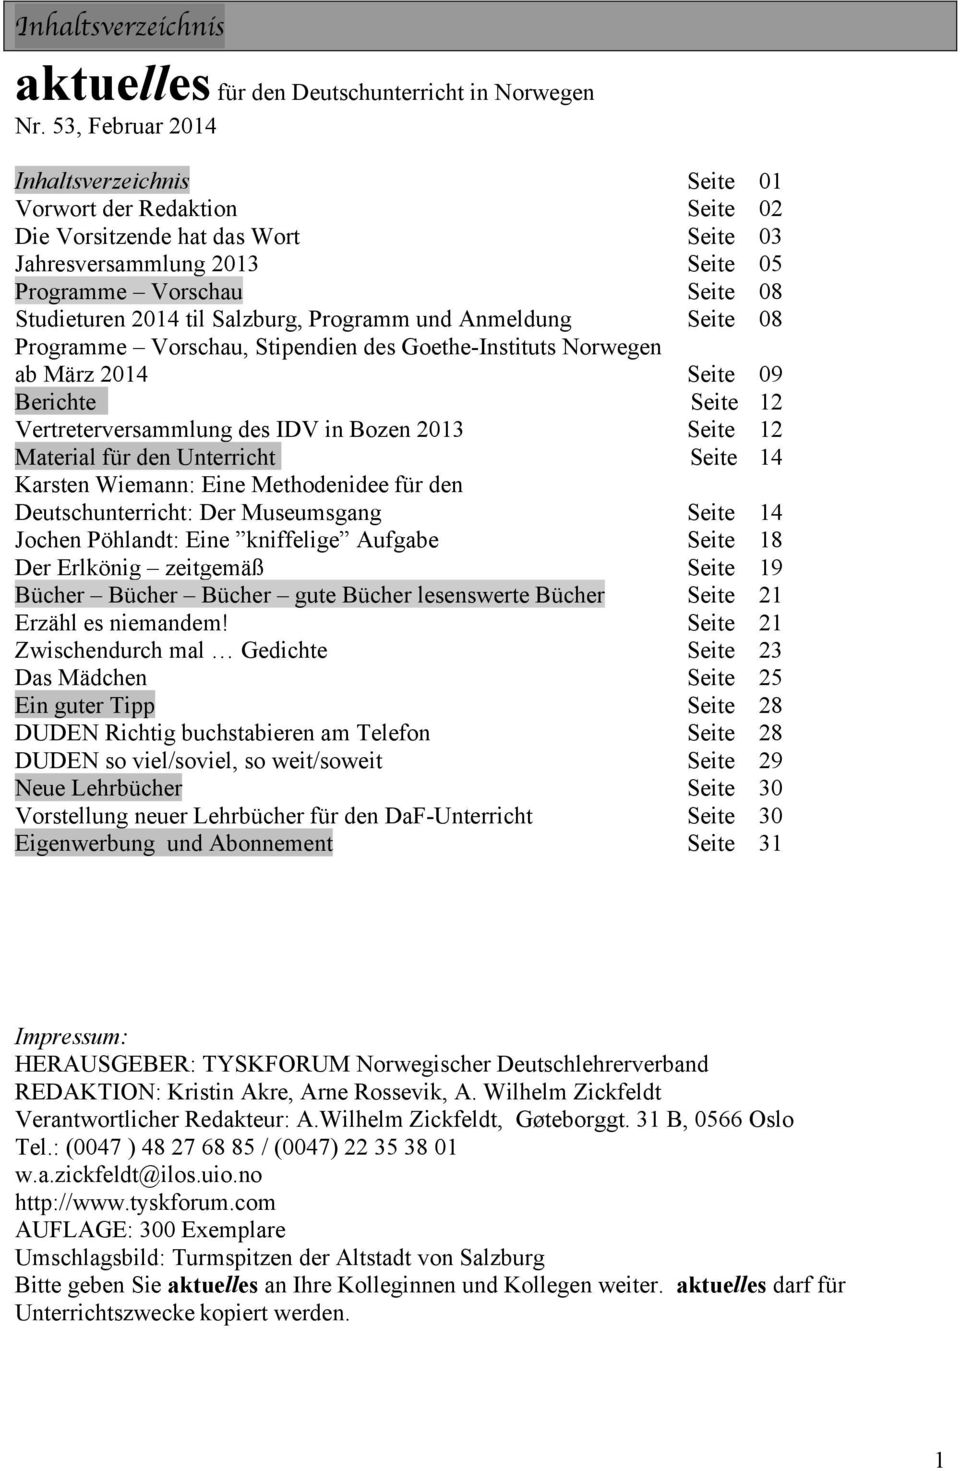 Salzburg, Programm und Anmeldung Seite 08 Programme Vorschau, Stipendien des Goethe-Instituts Norwegen ab März 2014 Seite 09 Berichte Seite 12 Vertreterversammlung des IDV in Bozen 2013 Seite 12